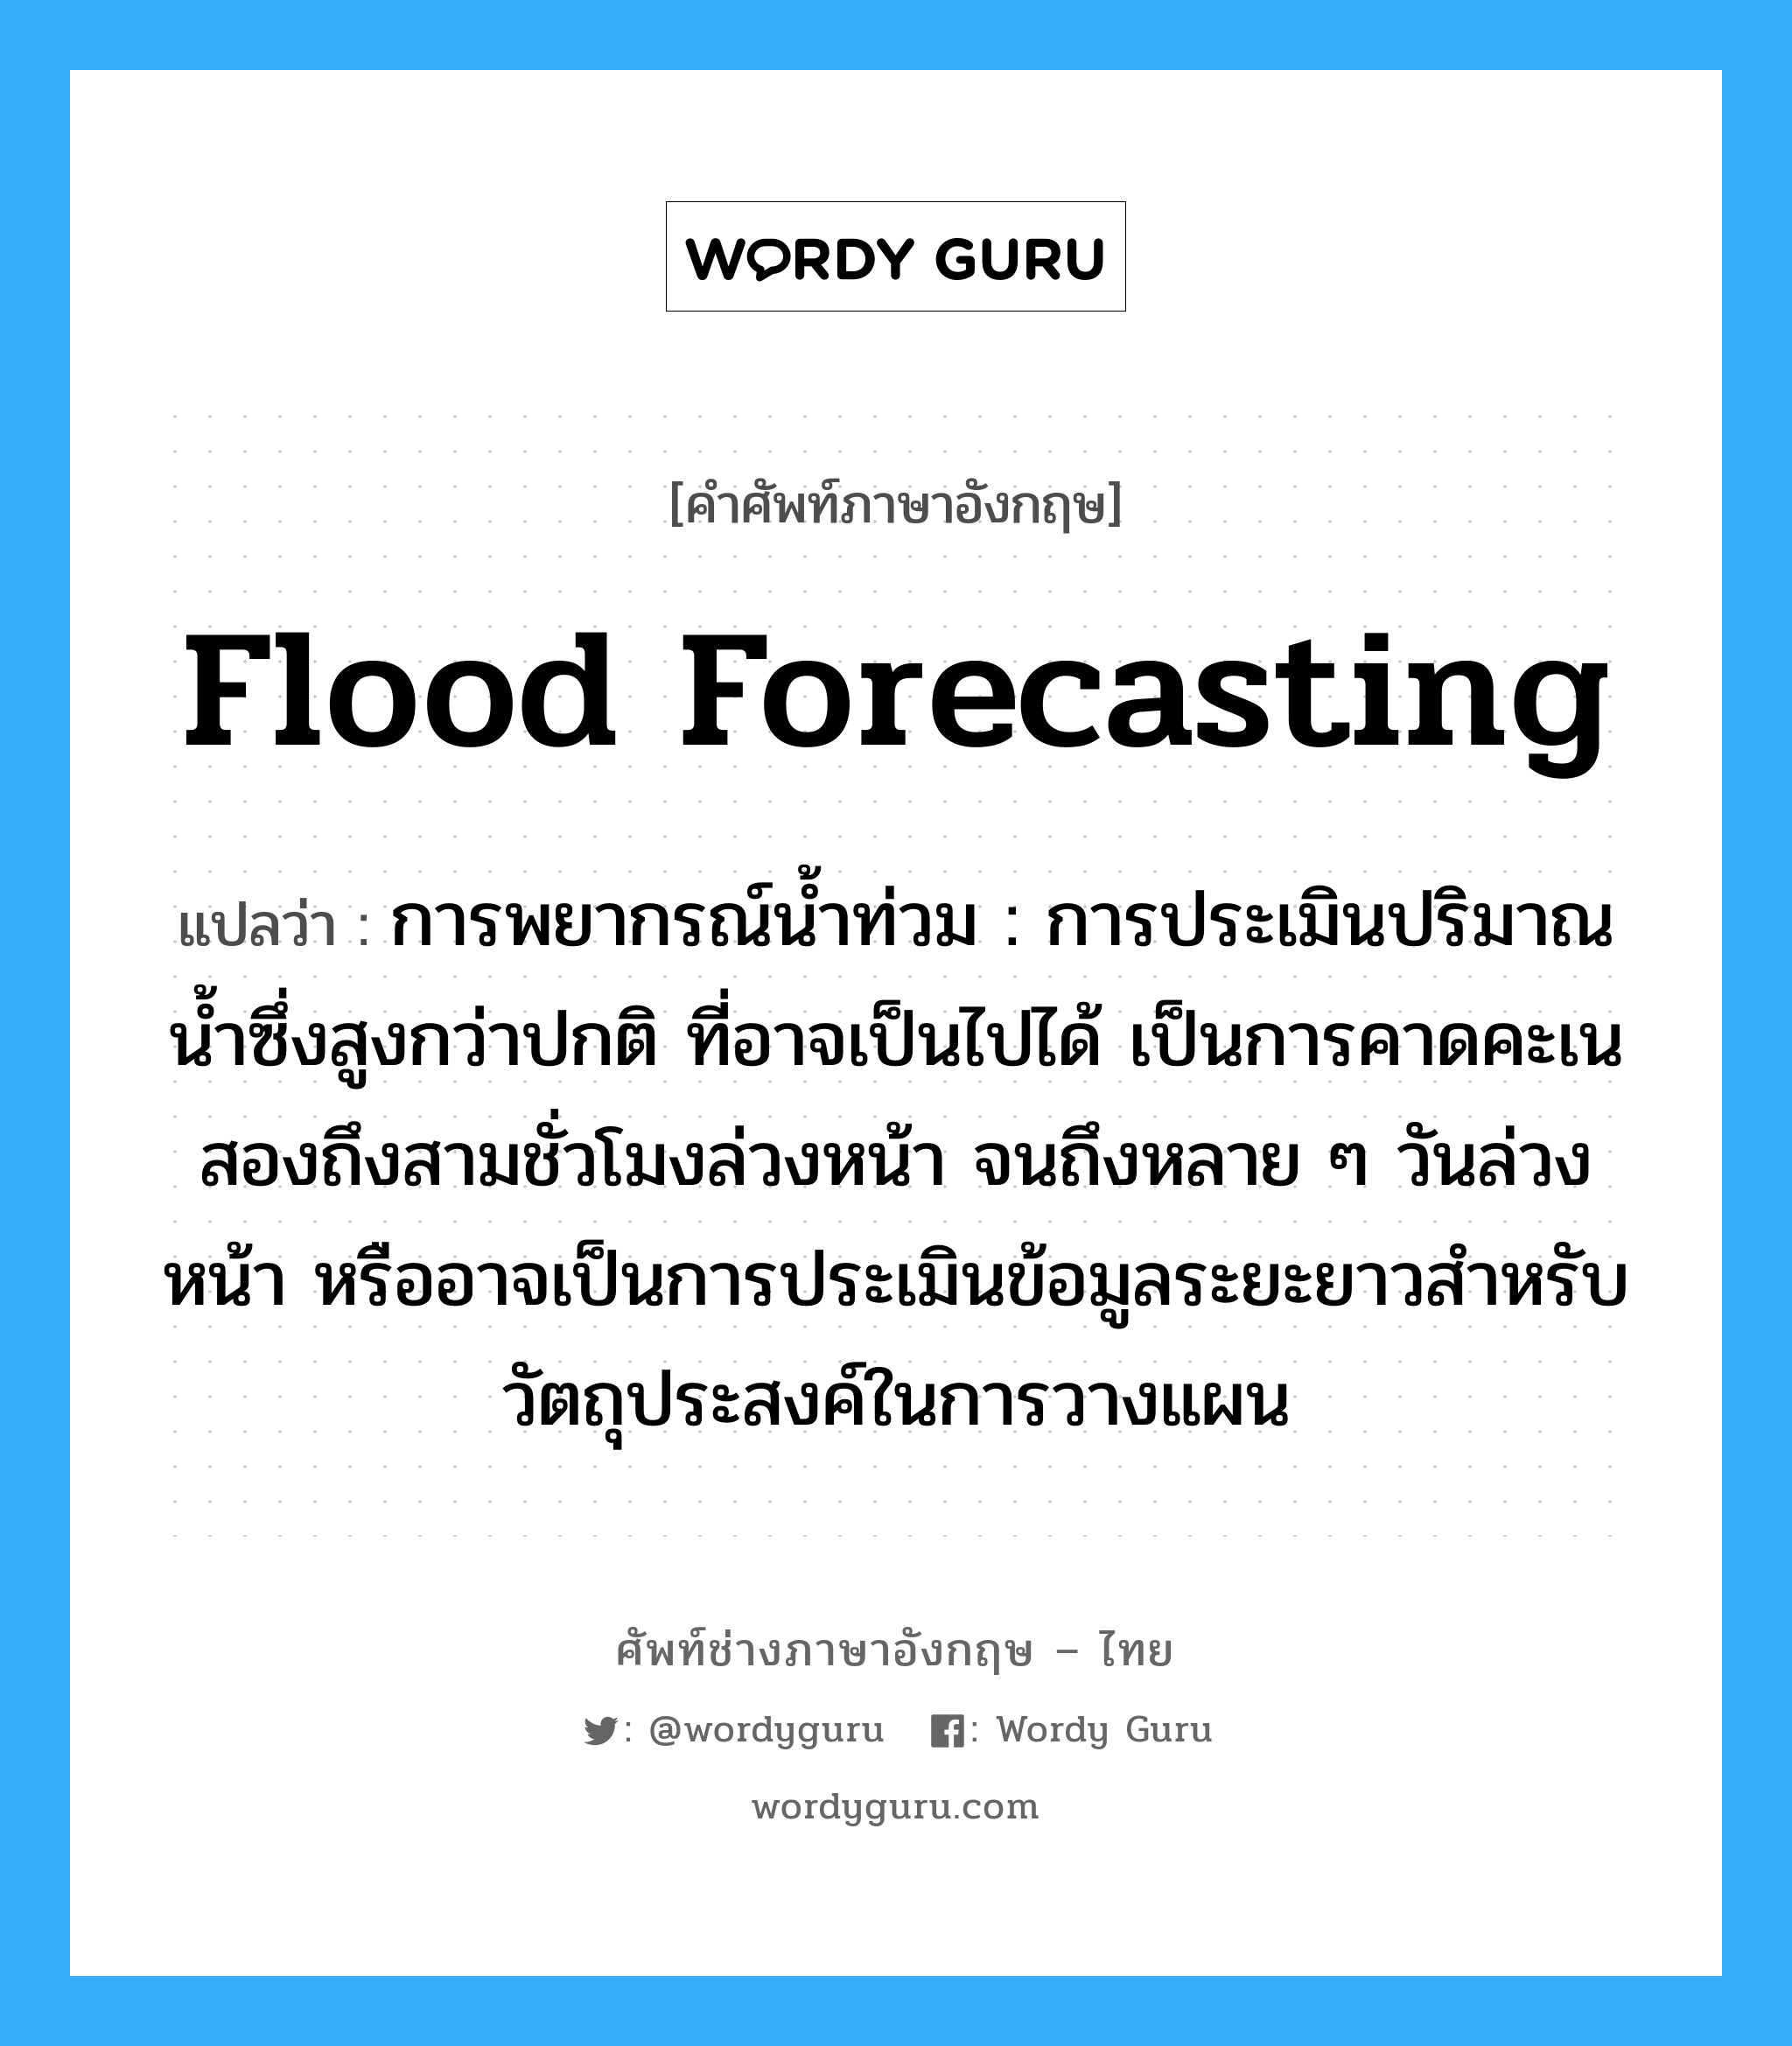 flood forecasting แปลว่า?, คำศัพท์ช่างภาษาอังกฤษ - ไทย flood forecasting คำศัพท์ภาษาอังกฤษ flood forecasting แปลว่า การพยากรณ์น้ำท่วม : การประเมินปริมาณน้ำซึ่งสูงกว่าปกติ ที่อาจเป็นไปได้ เป็นการคาดคะเนสองถึงสามชั่วโมงล่วงหน้า จนถึงหลาย ๆ วันล่วงหน้า หรืออาจเป็นการประเมินข้อมูลระยะยาวสำหรับวัตถุประสงค์ในการวางแผน